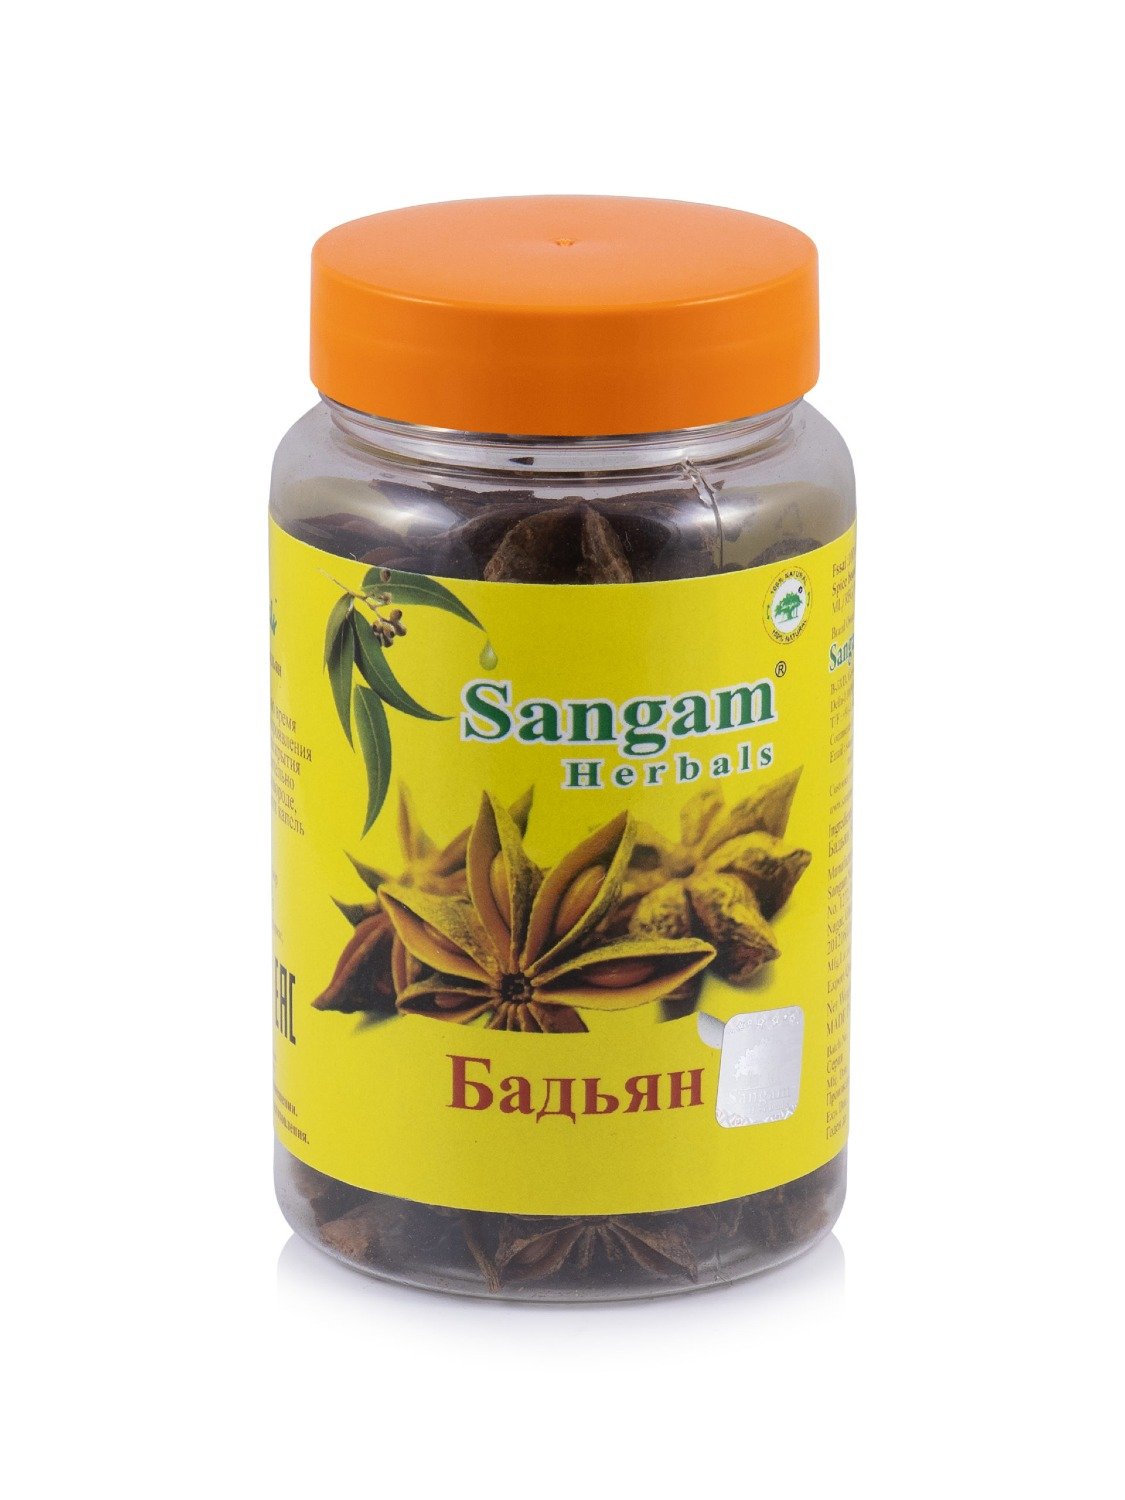 Купить Бадьян Sangam Herbals (45 г) в интернет-магазине #store#